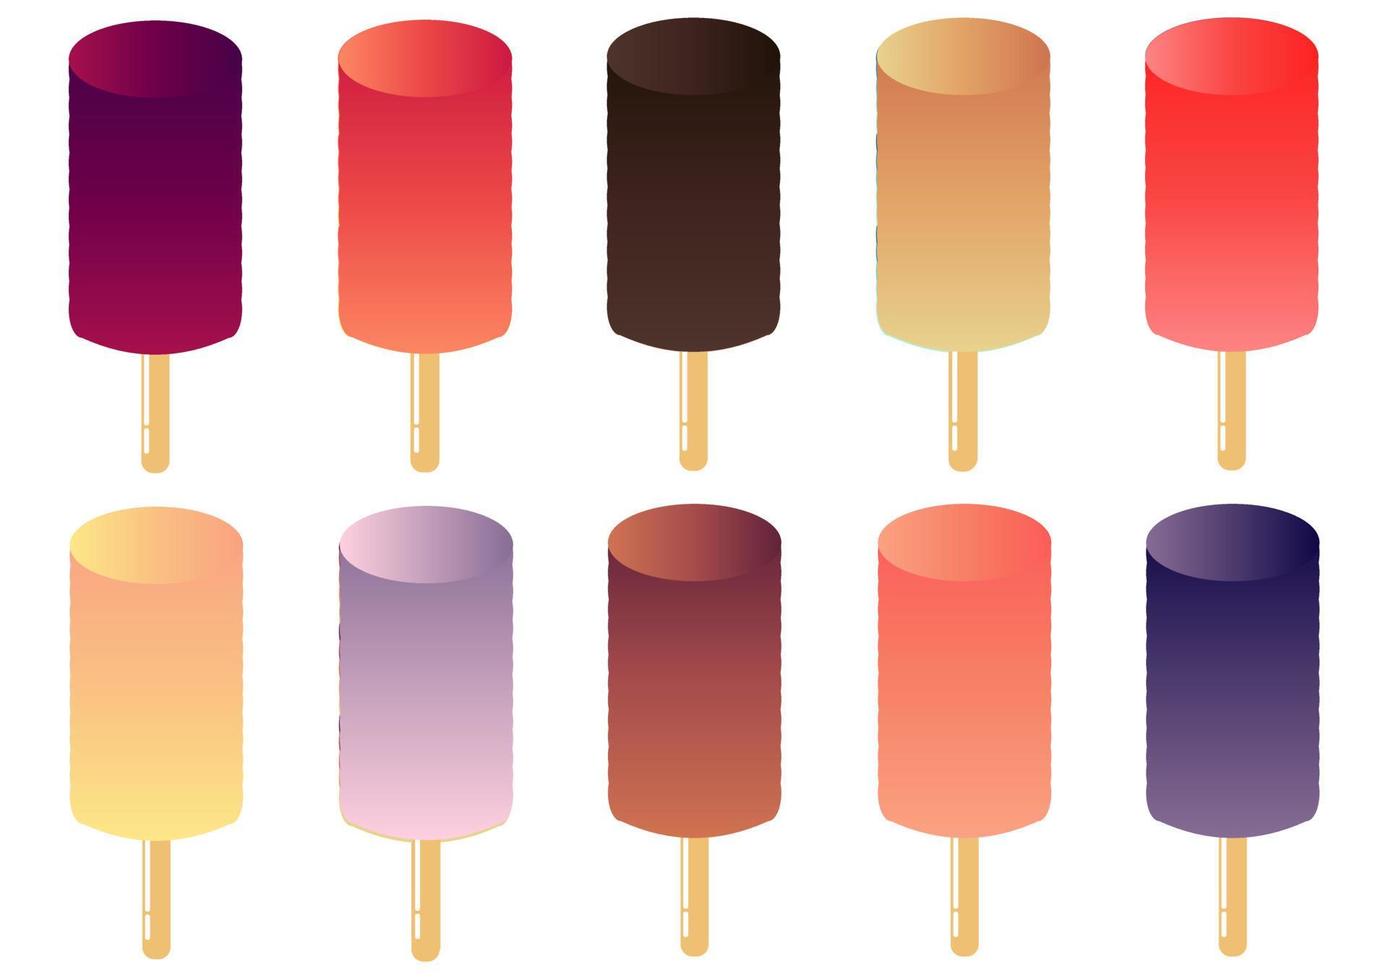 verzameling kleurrijk lolly-ijs met kleurgradatie vector